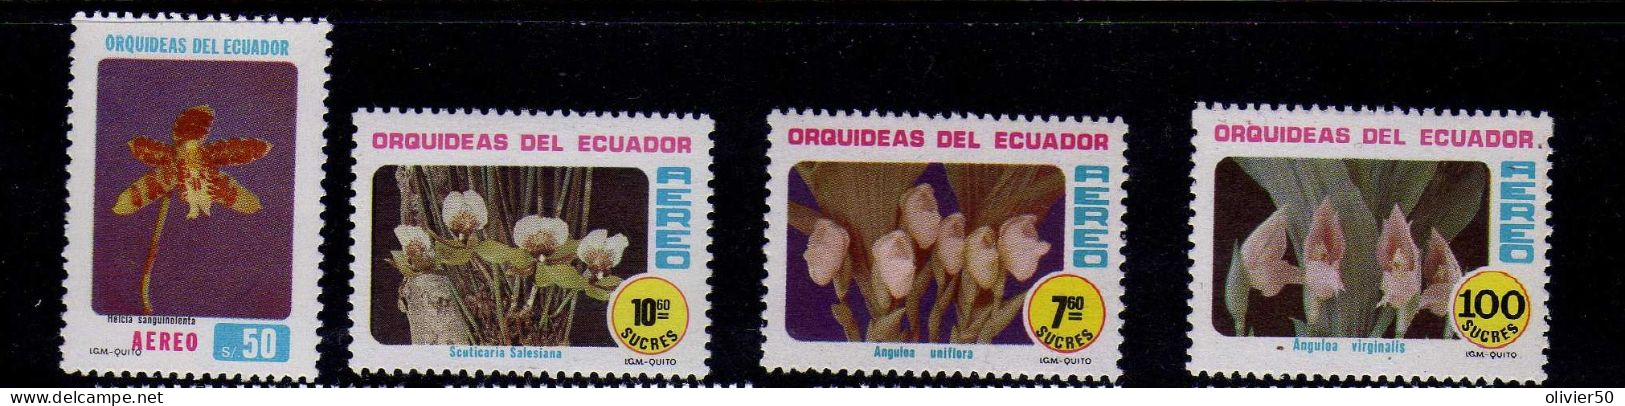 Equateur - 1980 - P A - Flore - Orchidees - Neufs** - MNH - Ecuador